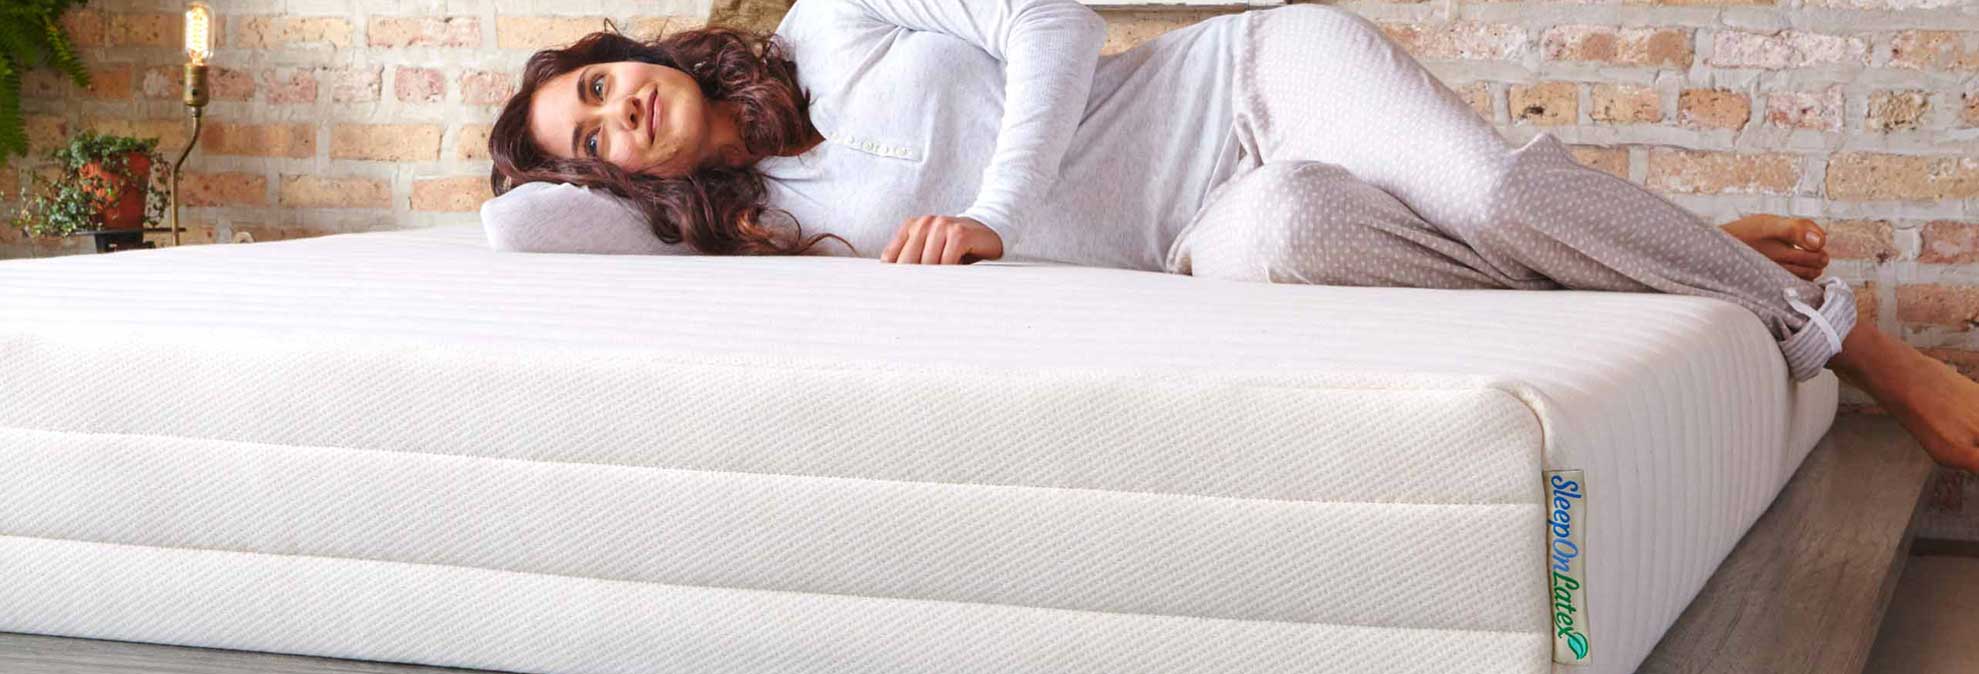 best mattress for platform beds consumer reports